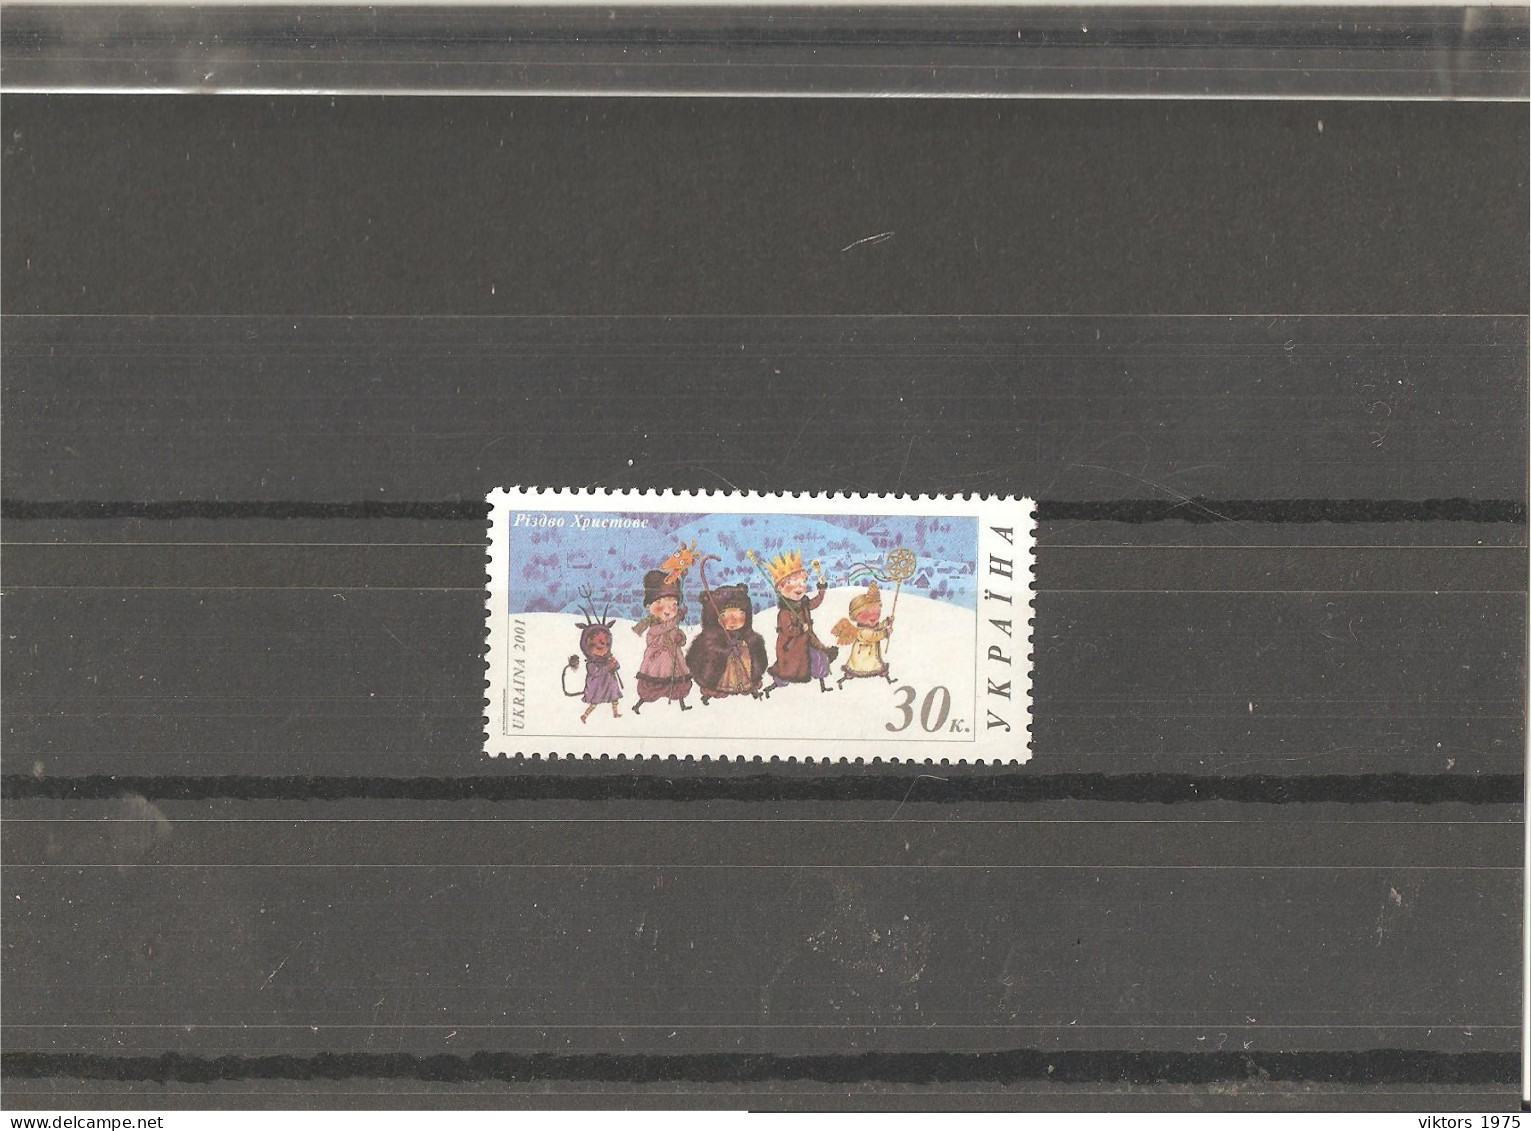 MNH Stamp Nr.471 In MICHEL Catalog - Ukraine